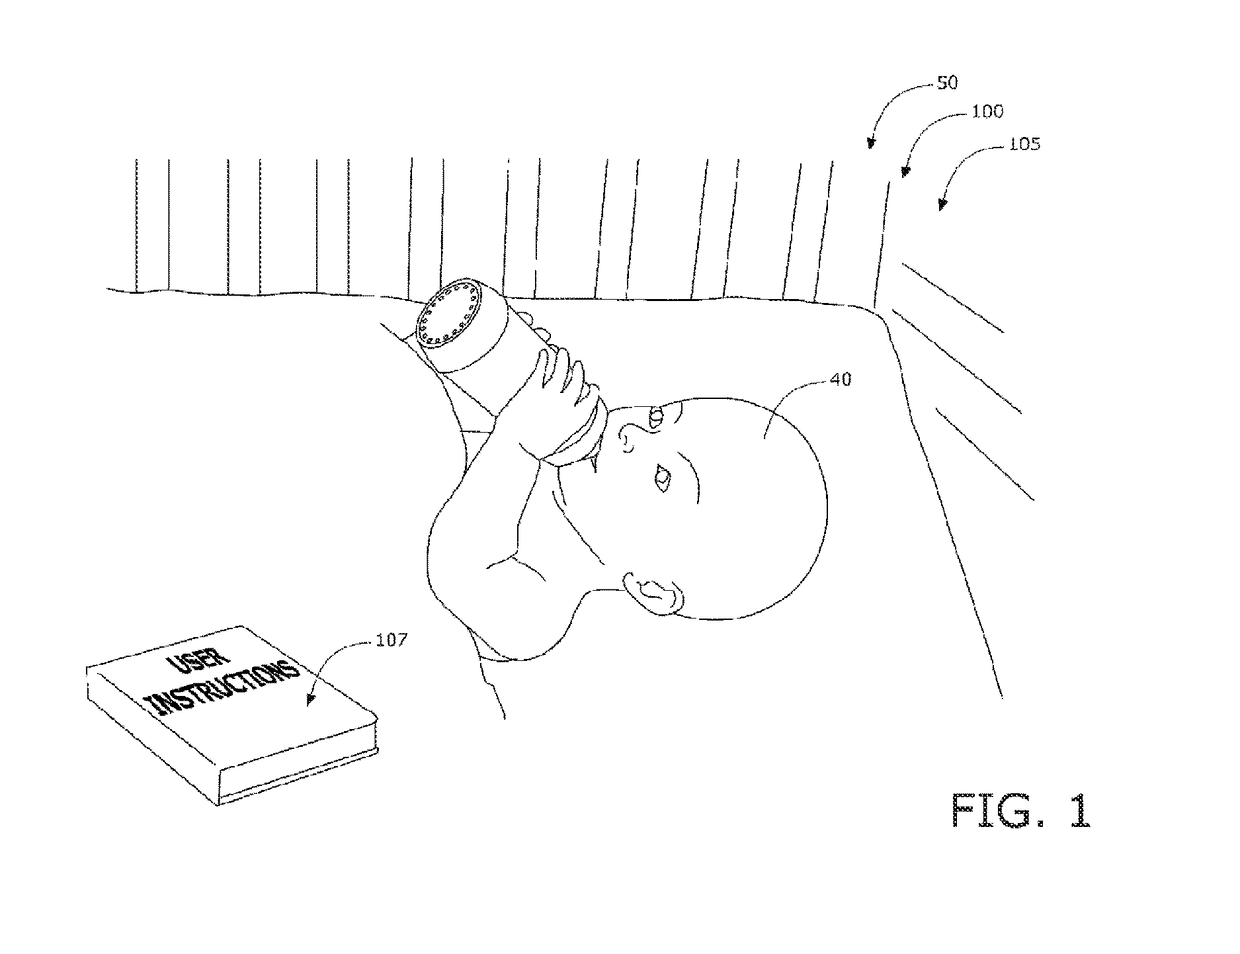 Illuminated baby bottle device and method